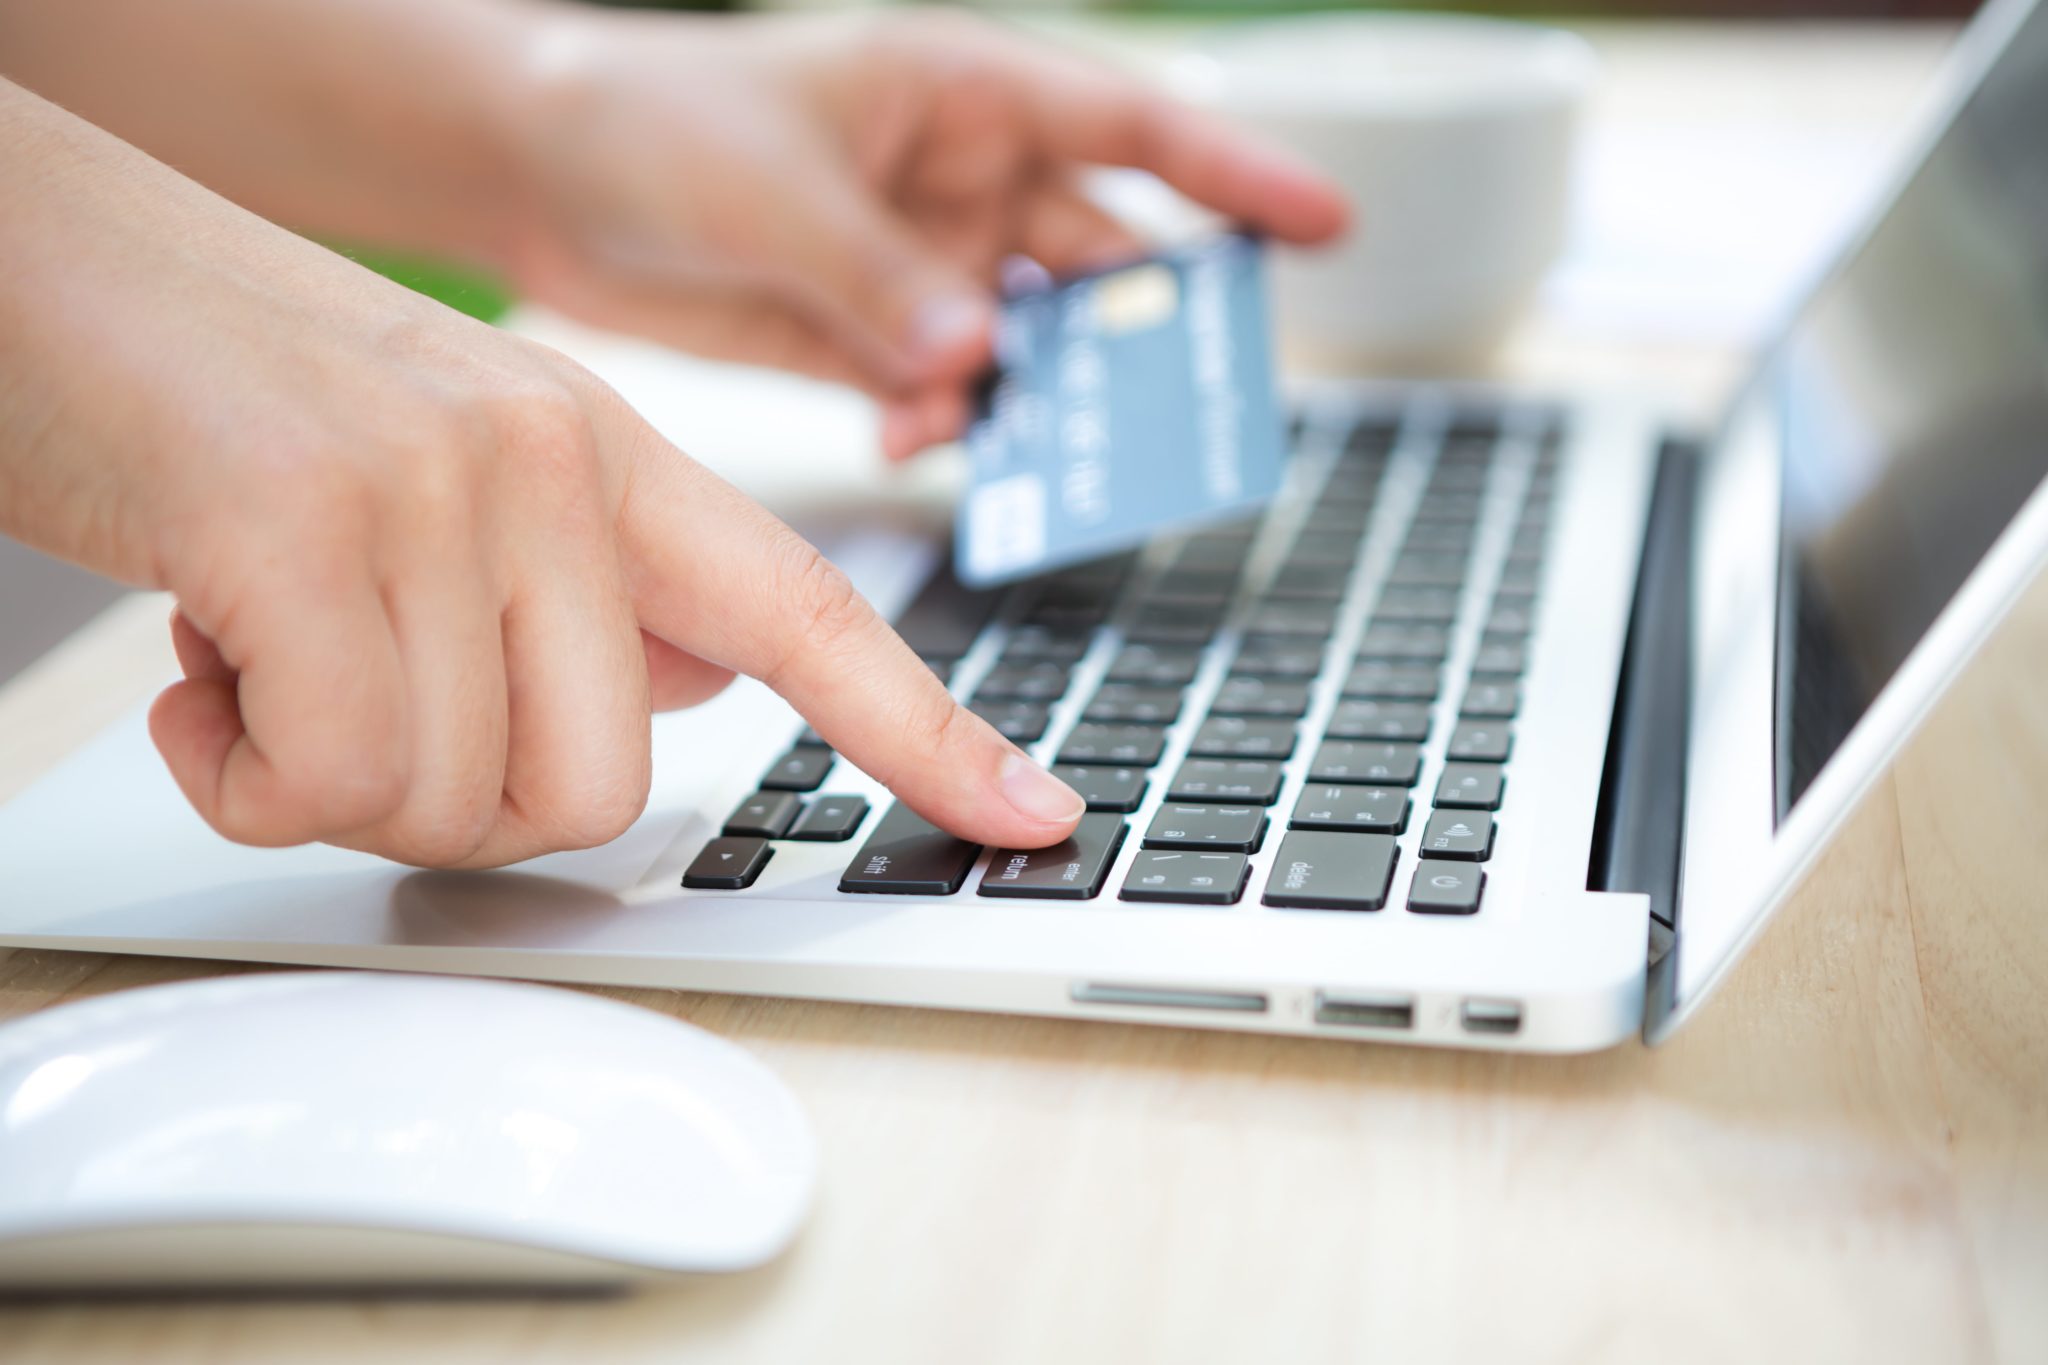 Retourkosten verminderen: 6 tips voor online retailers